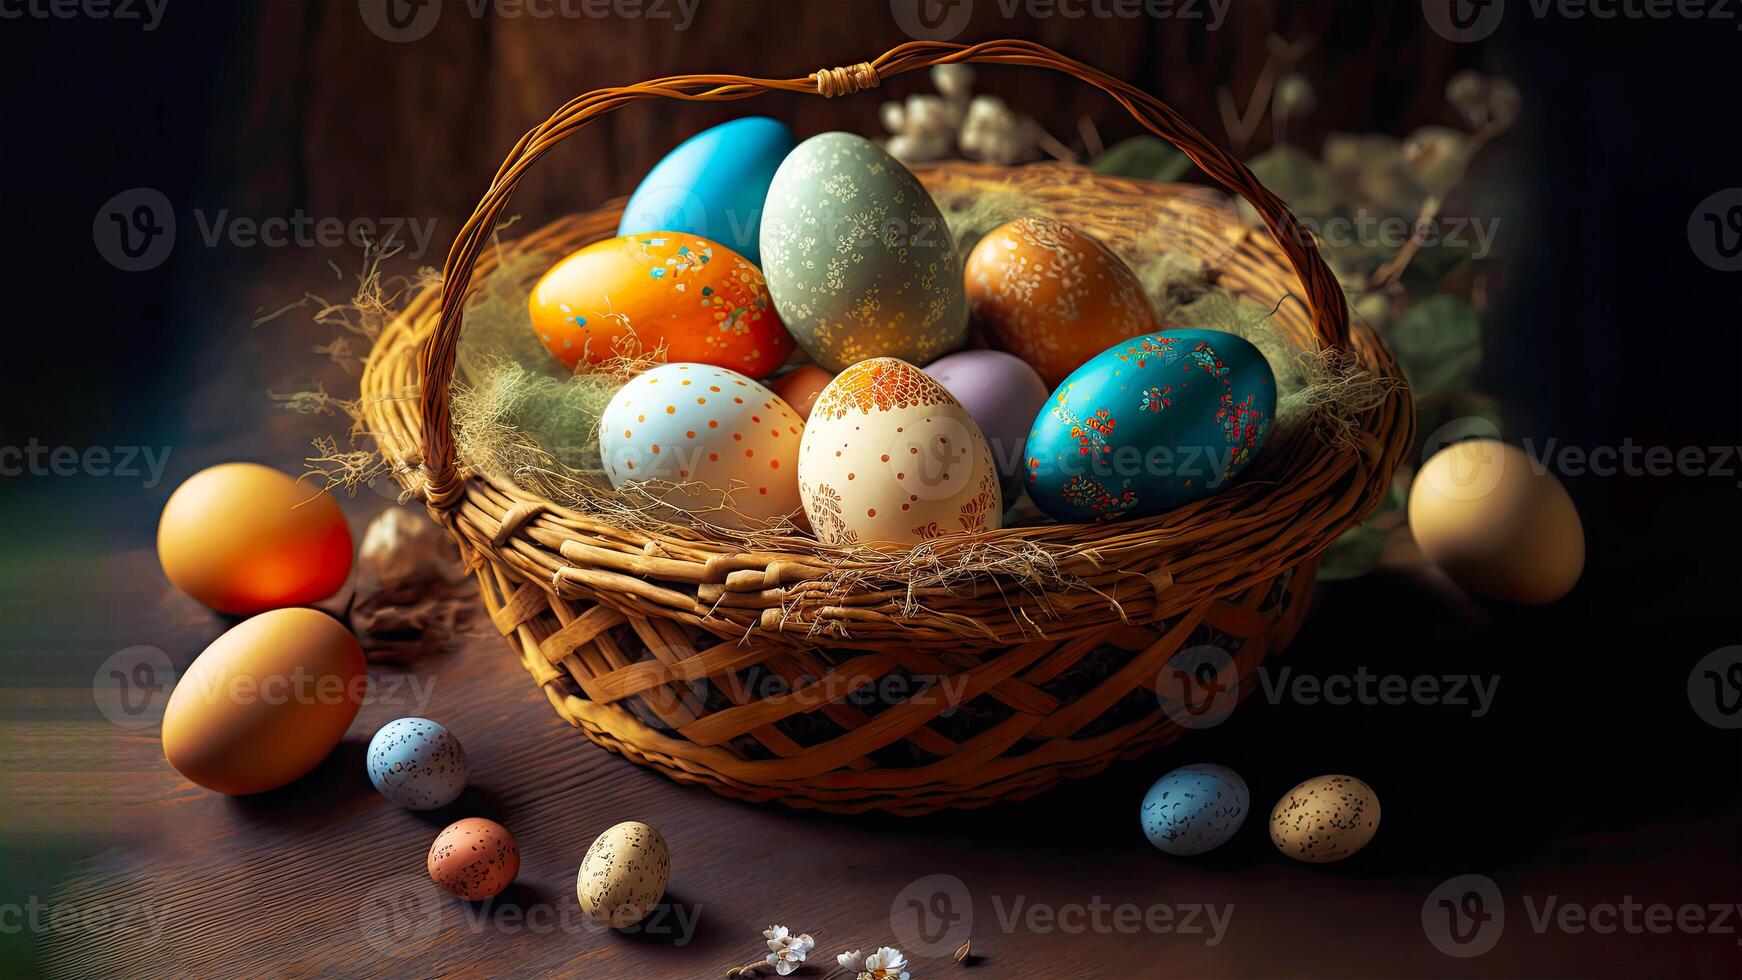 3d hacer de brillante vistoso Pascua de Resurrección huevos cesta en marrón de madera textura antecedentes y Copiar espacio. contento Pascua de Resurrección día concepto. foto